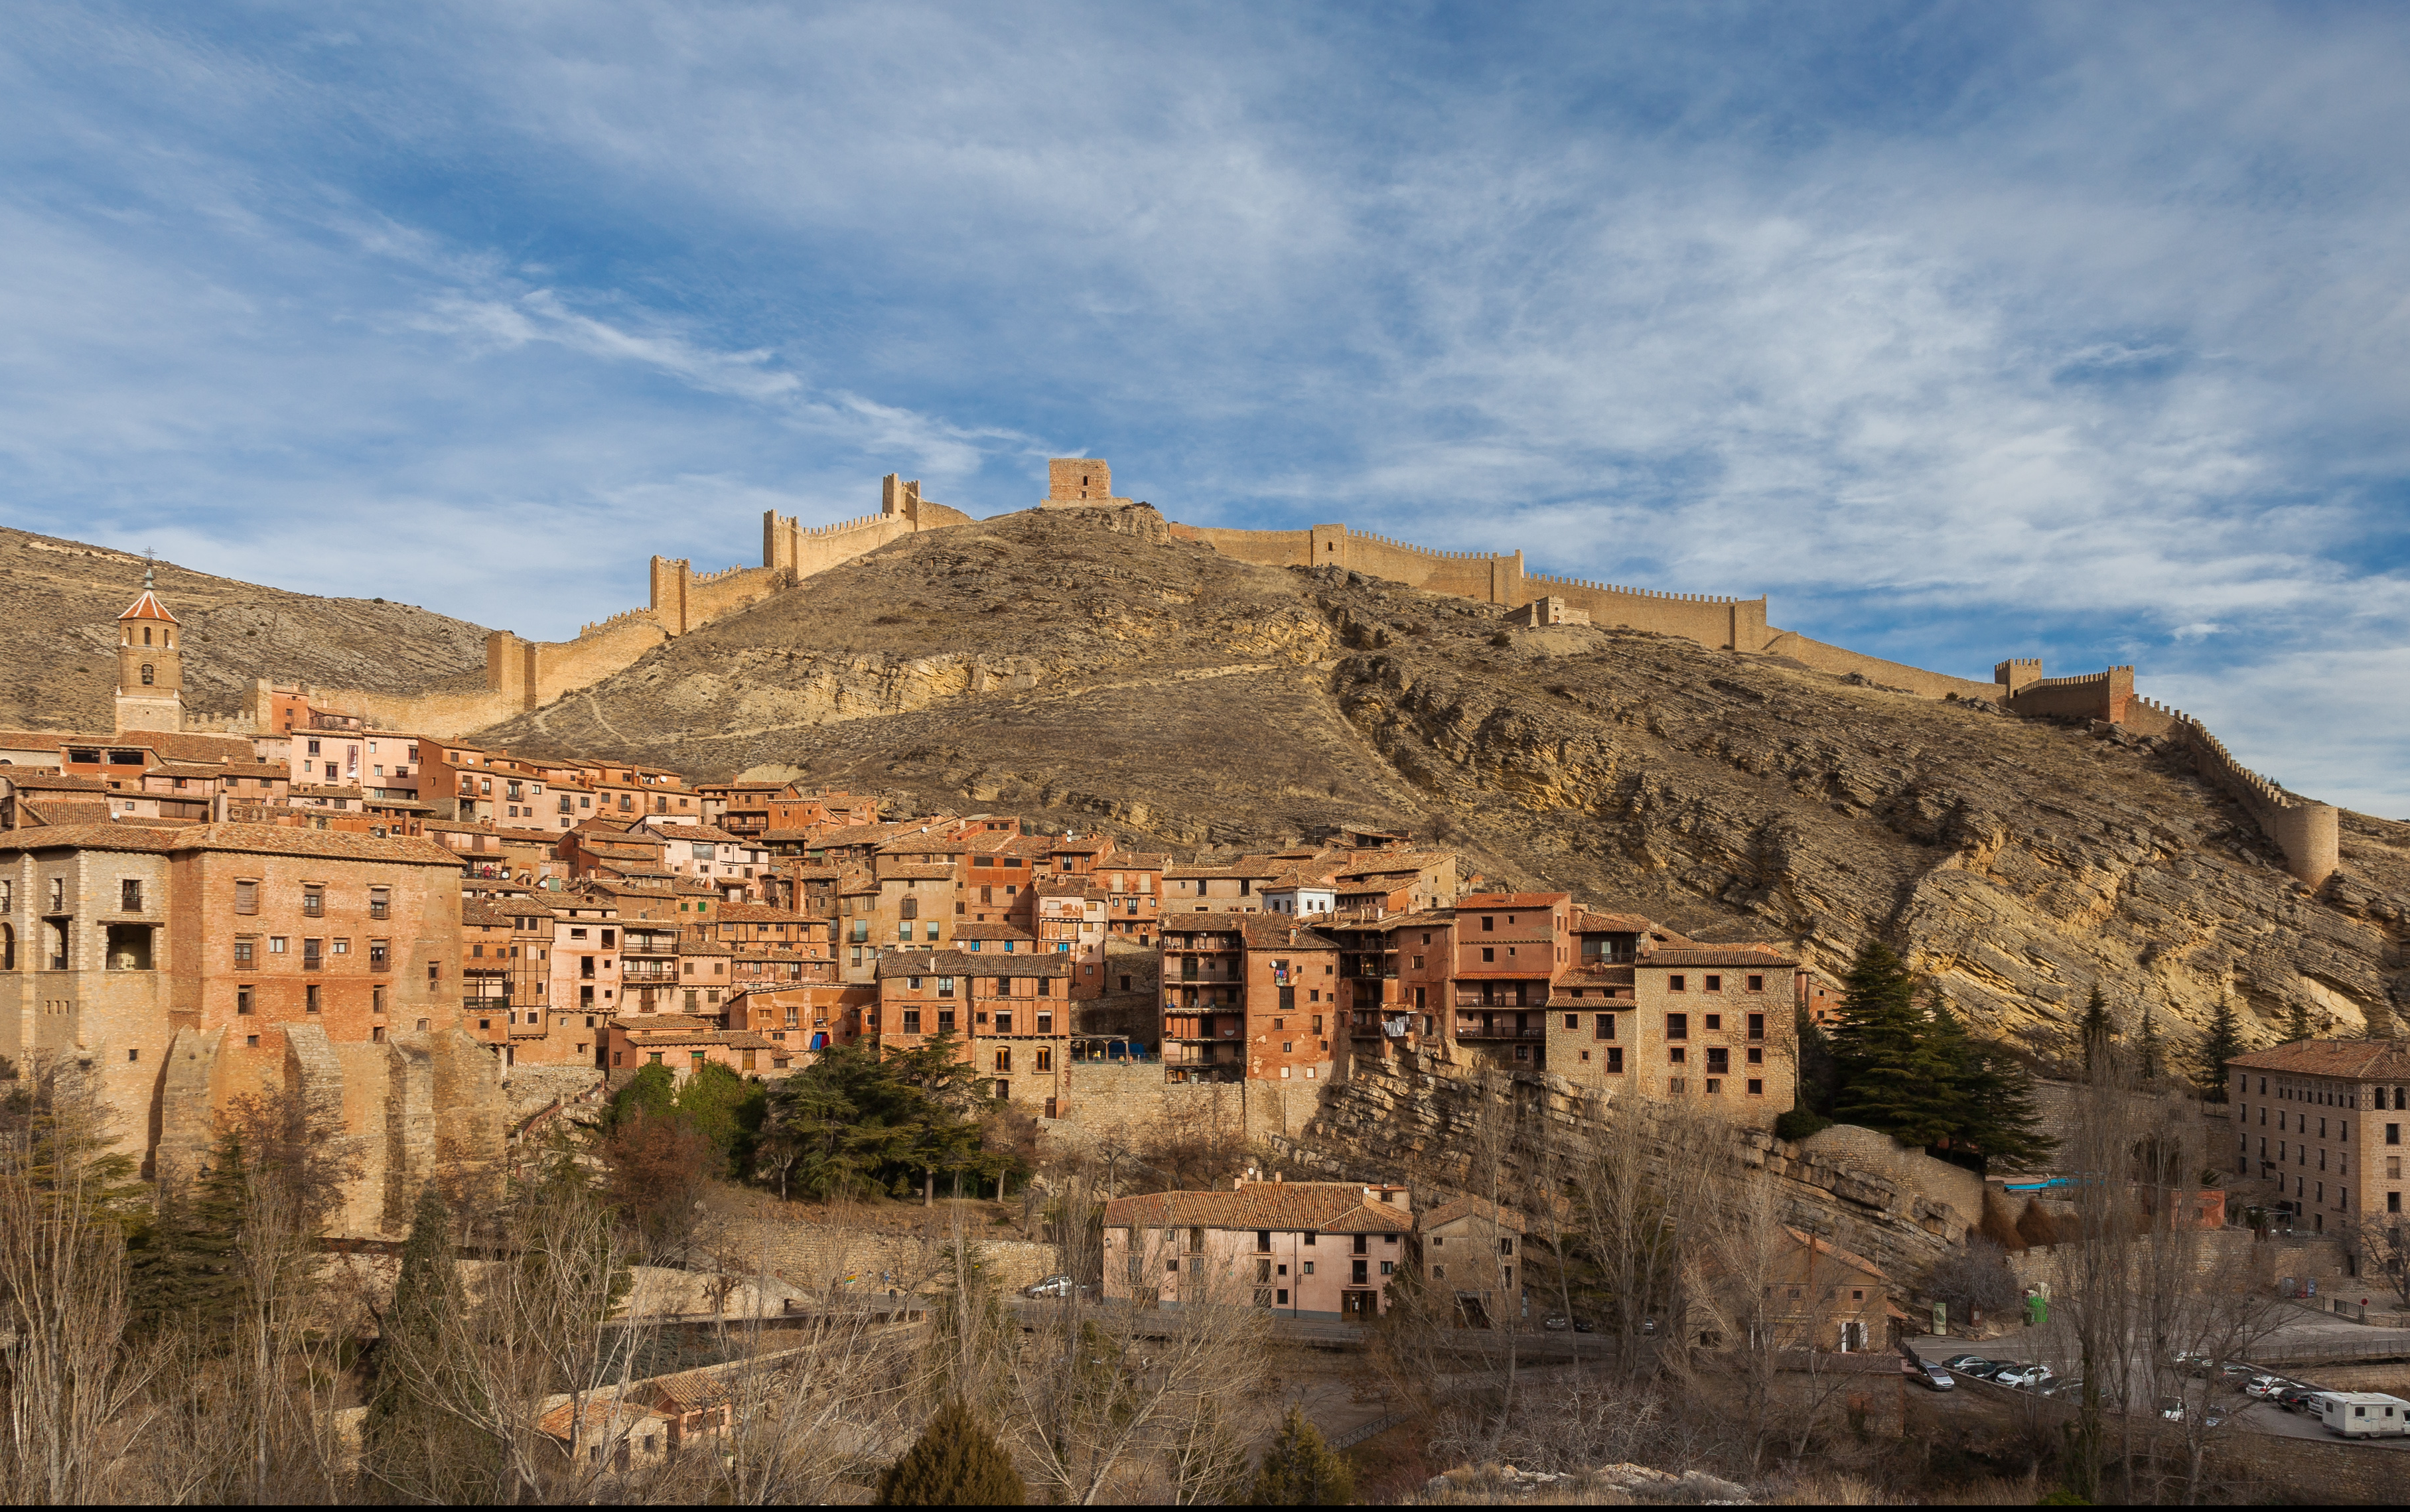 El Rodeno: Camarena de la Sierra - Gea de Albarracín